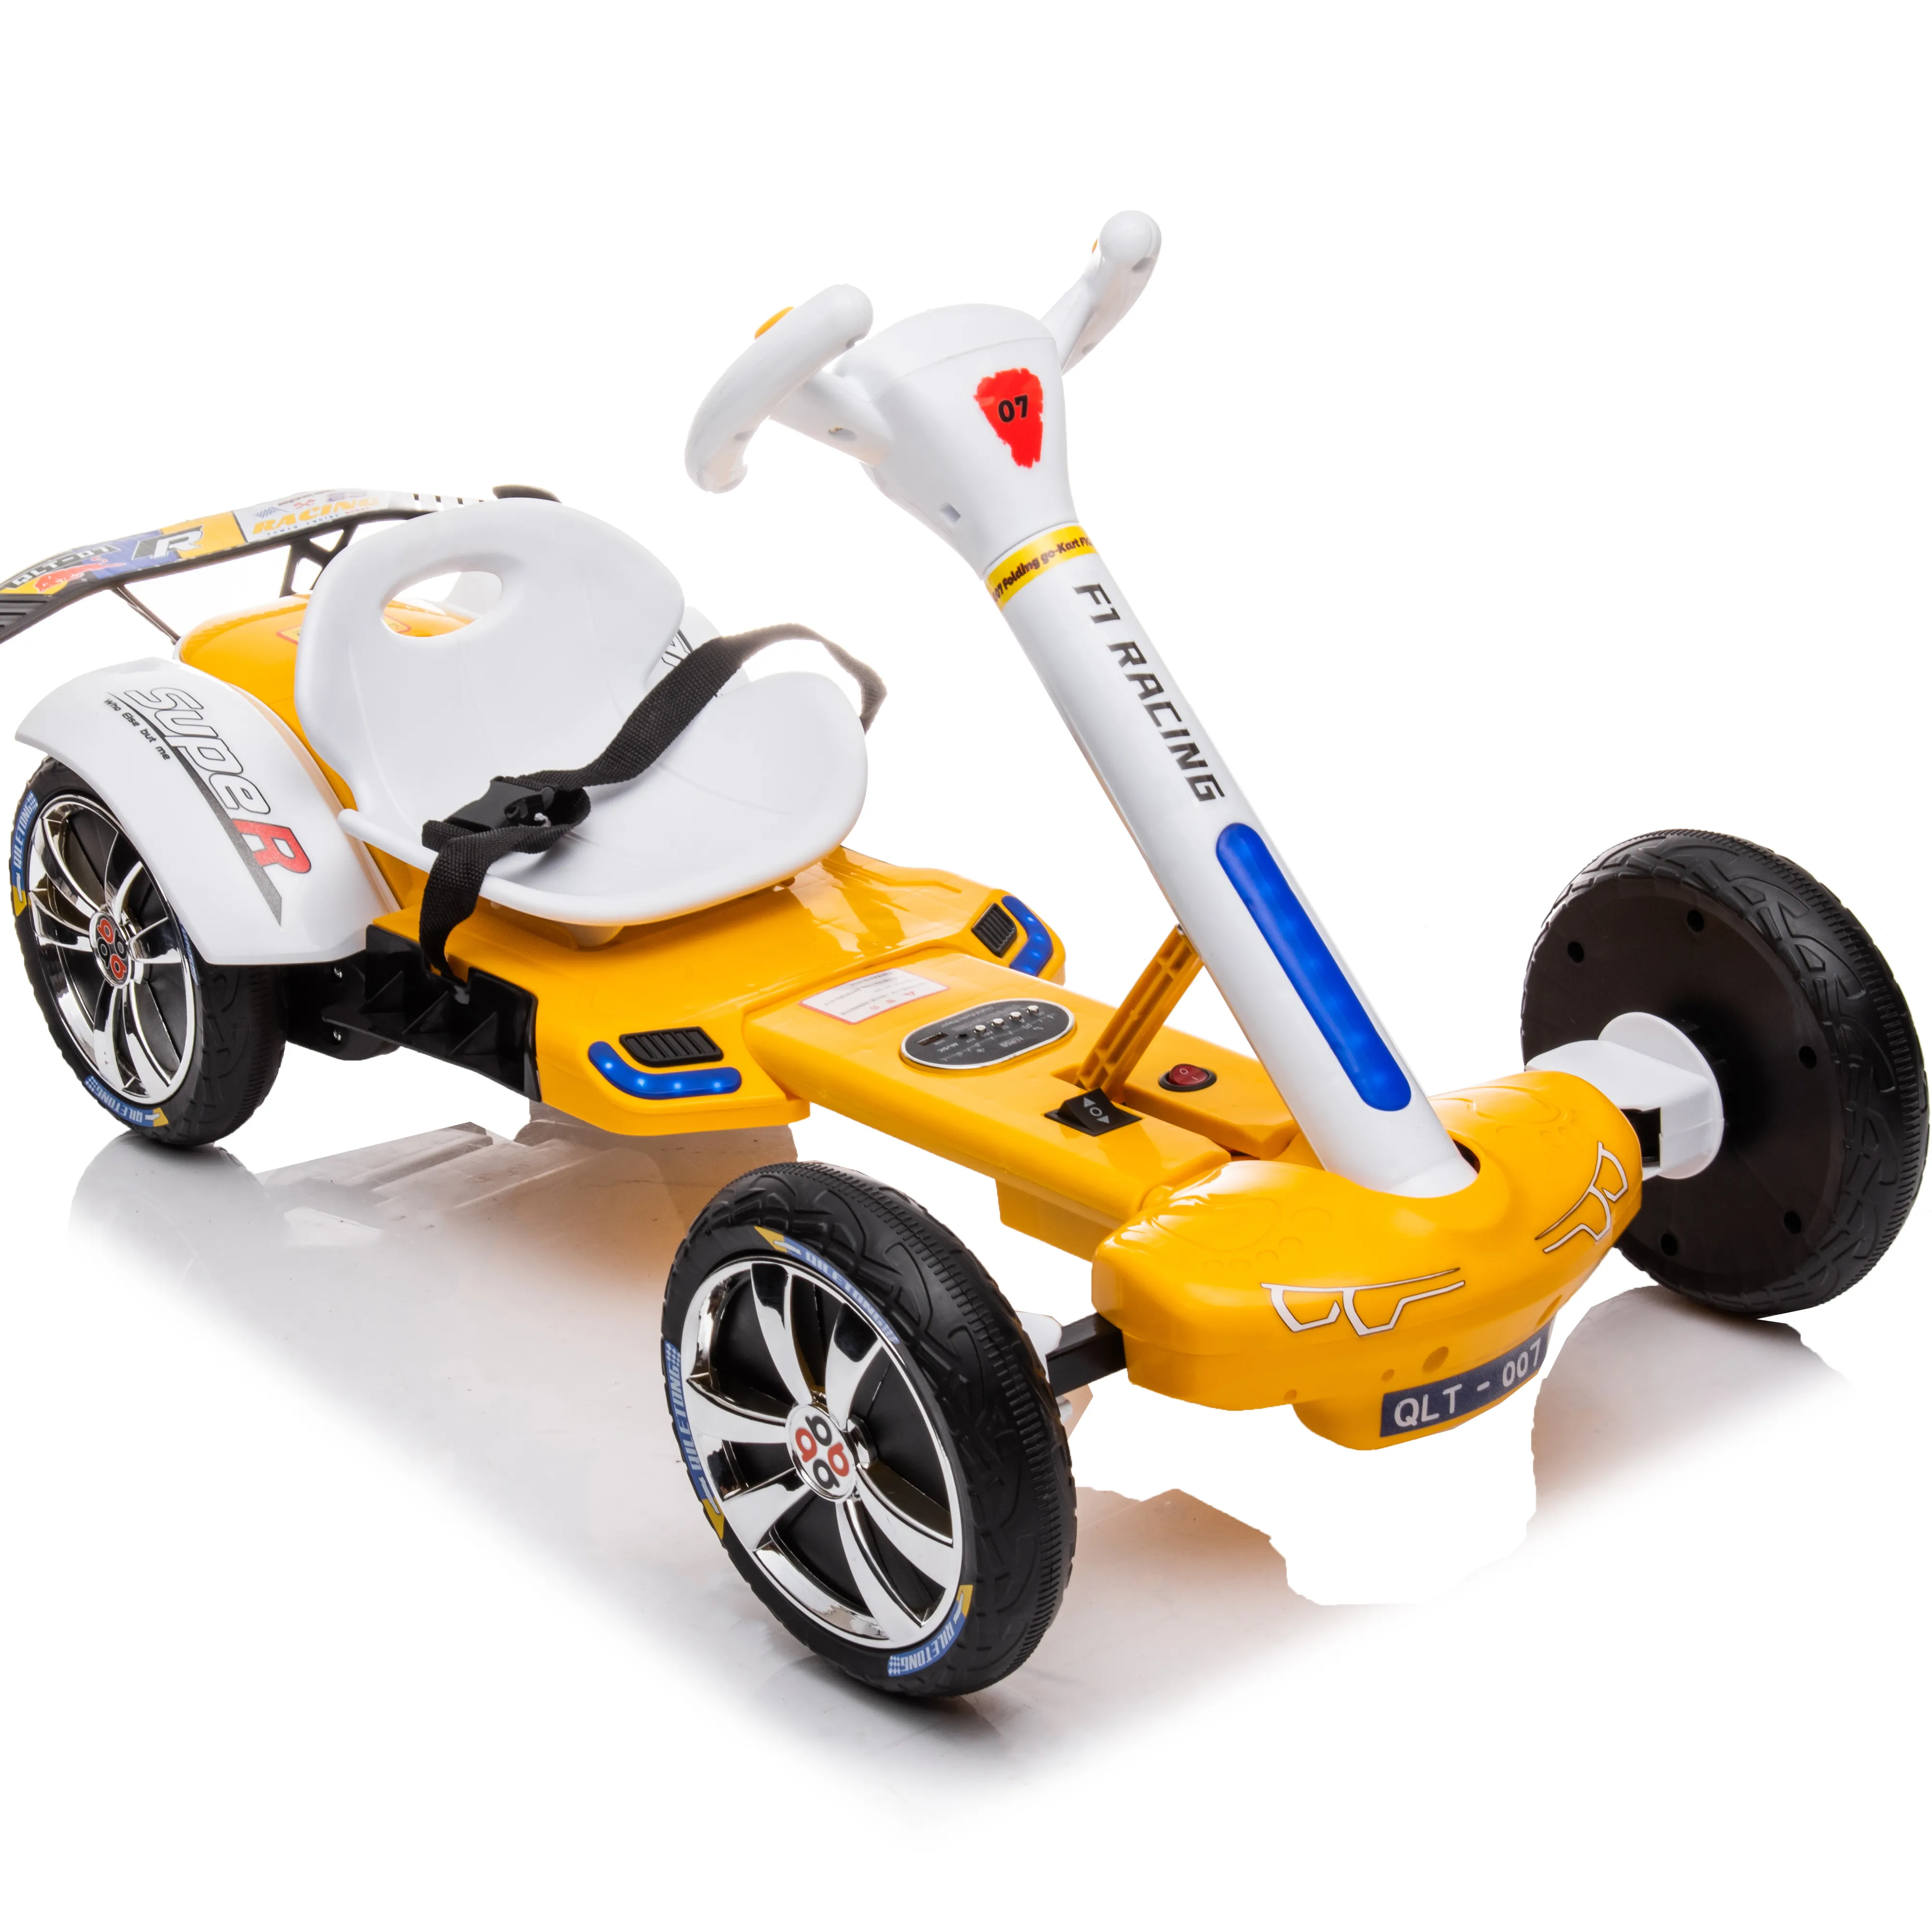 Go-kart auto elettrica per bambini a quattro ruote drift giocattolo ricaricabile a distanza per bambini in auto con freni indipendenti